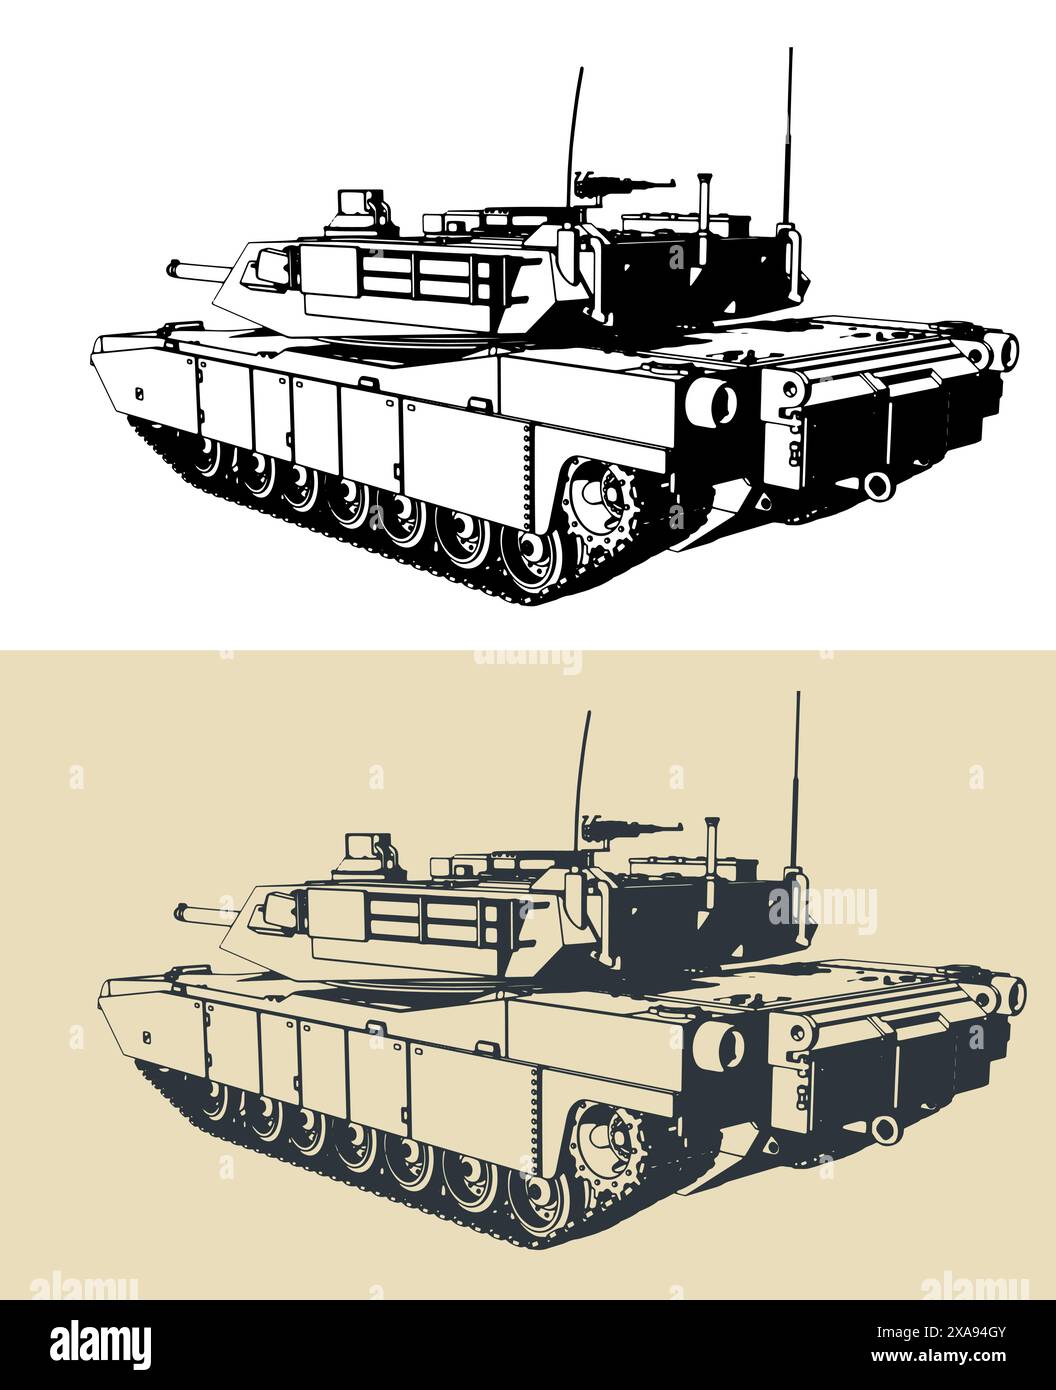 Stilisierte Vektor-Illustrationen eines Hauptkampfpanzers der US-Armee - M1 Abrams Stock Vektor